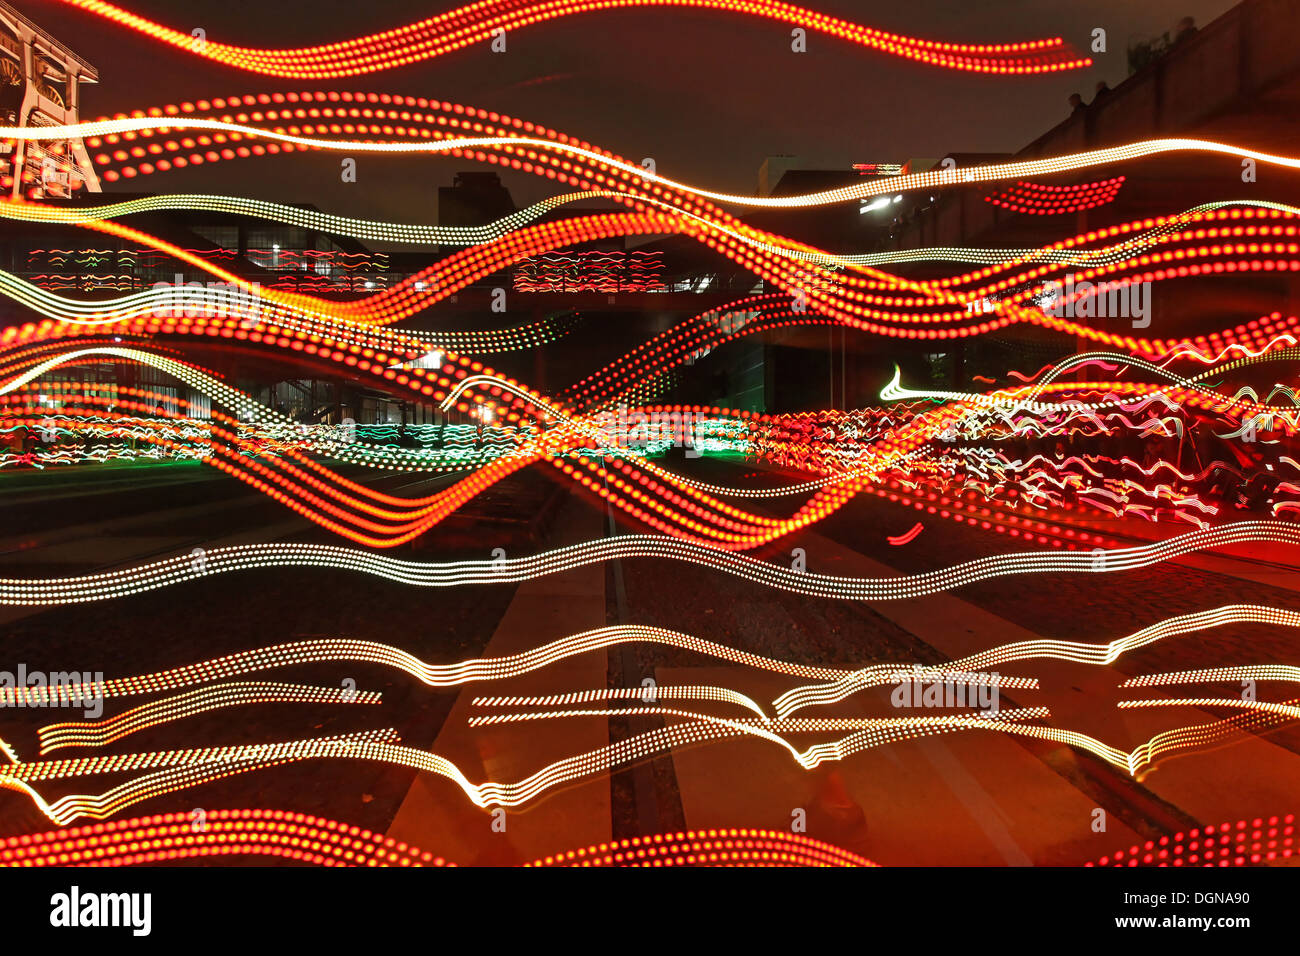 Lichtgeschwindigkeit Ruhr. Leichte Veranstaltung 120 Läufer beleuchtete digitale led-leuchten auf den Kufen zu entsprechen. Kunst-Event von Angus Farquhar Stockfoto